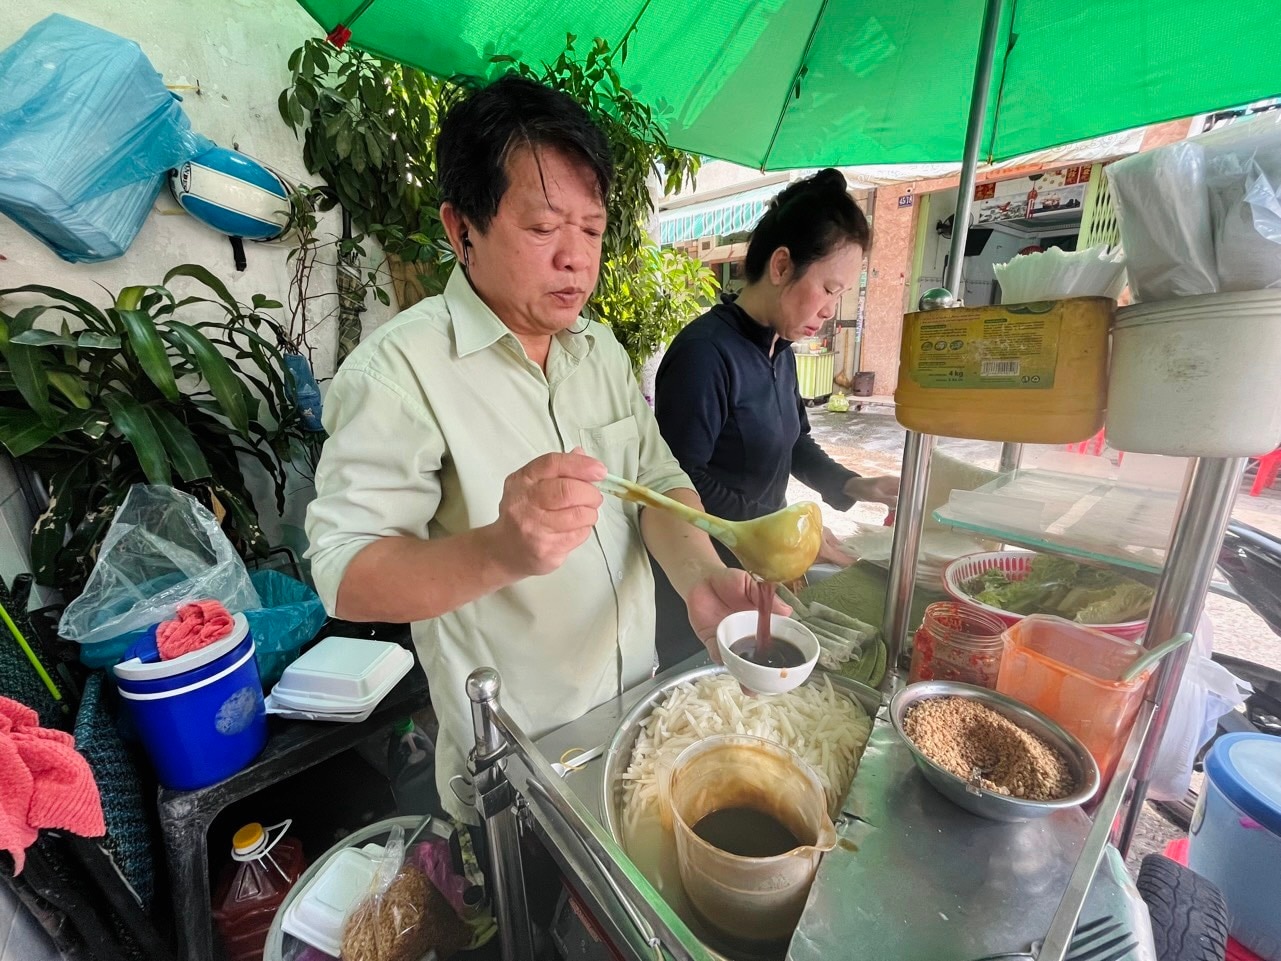 Bò bía rẻ nhất Sài Gòn: bán hơn 25 năm, khách mê vì nước chấm độc quyền - Ảnh 2.